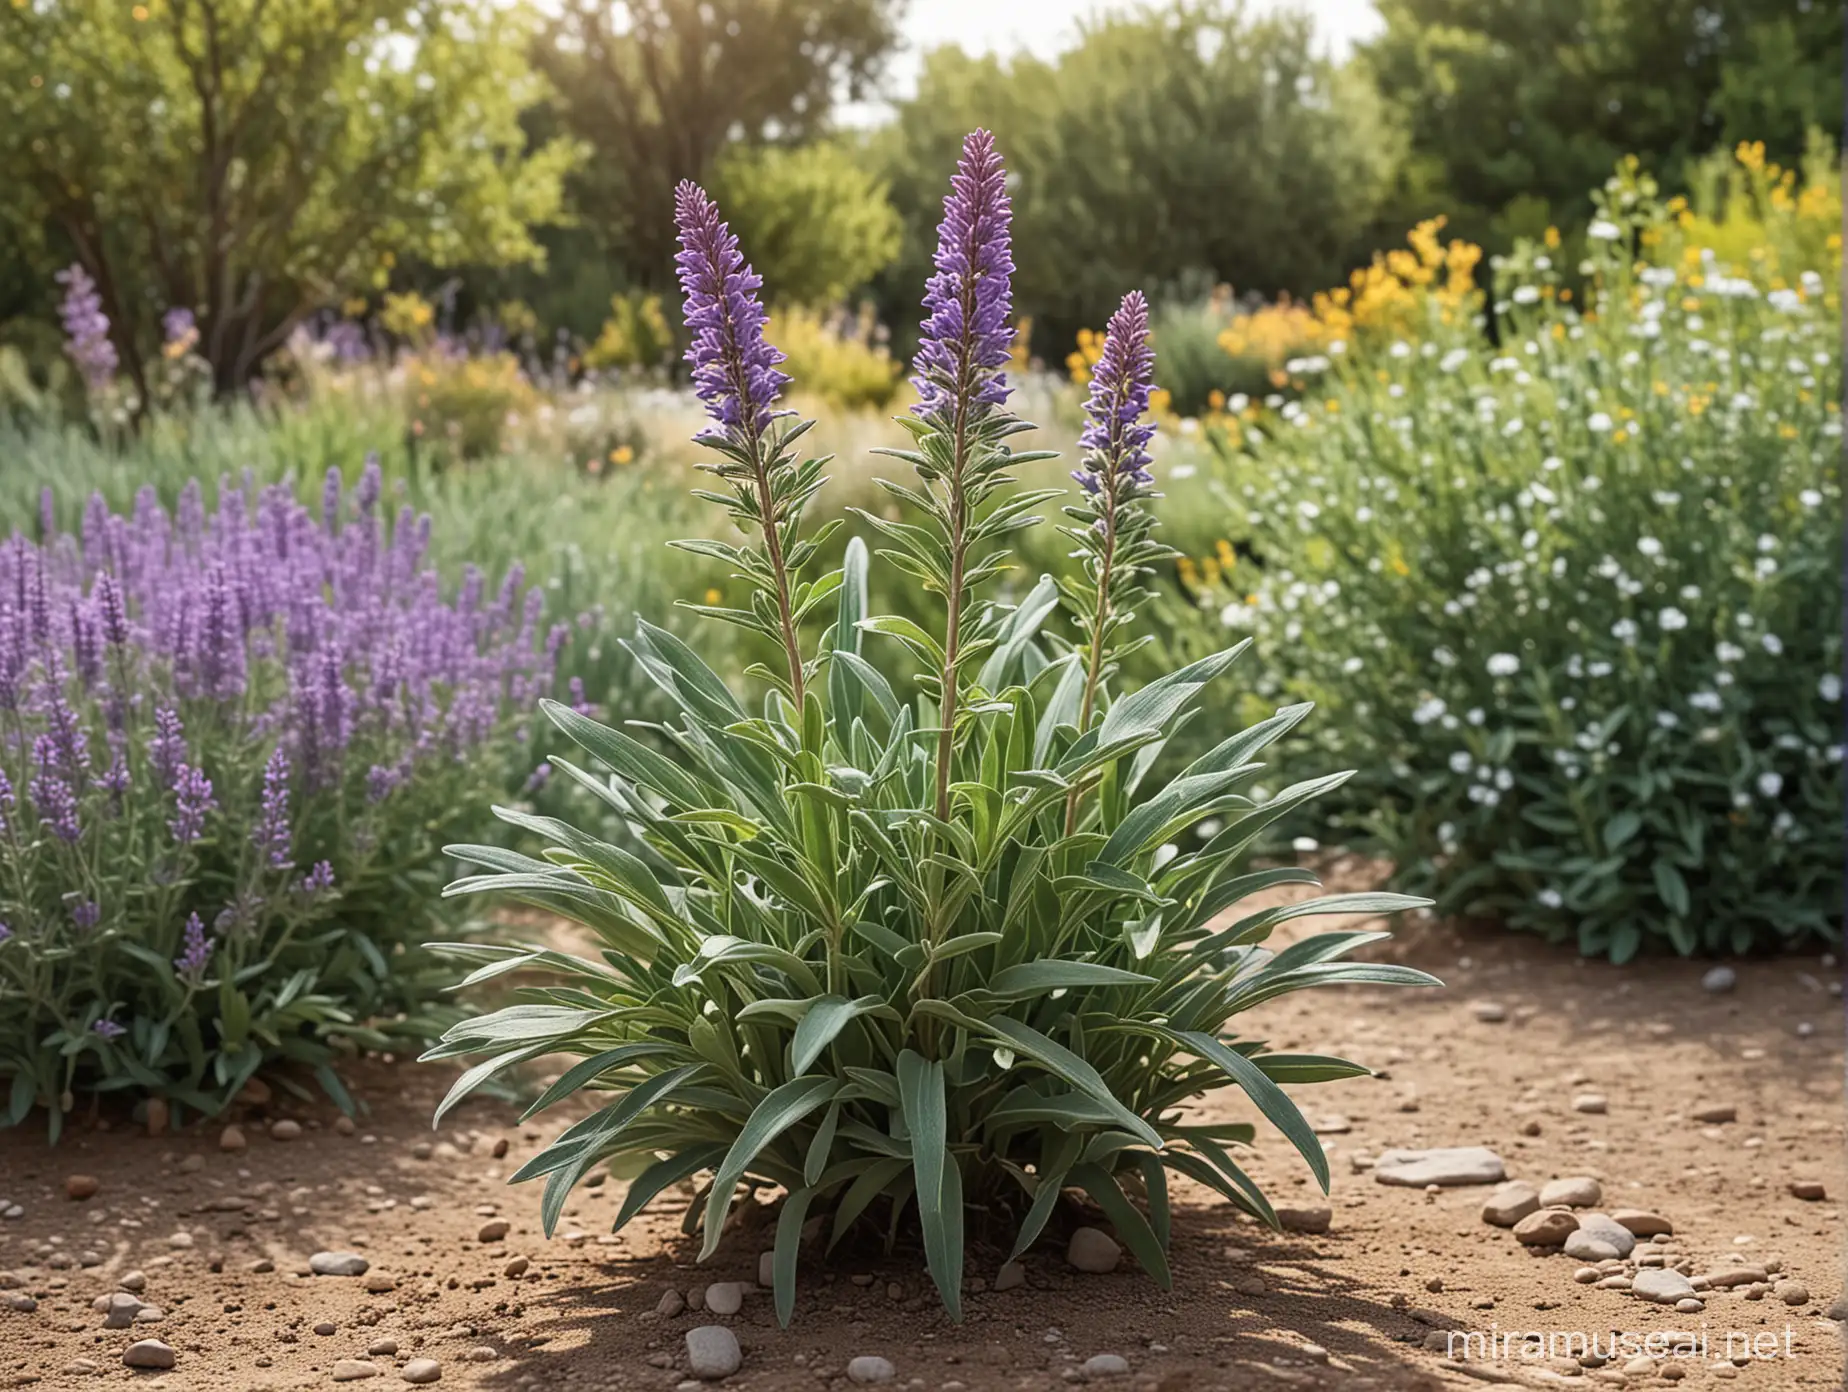 erstelle ein realistisches foto mit einer blühenden salbeipflanze im vordergrund, erstelle eine variante mit der blüte im vordergrund und einem garten im hintergrund